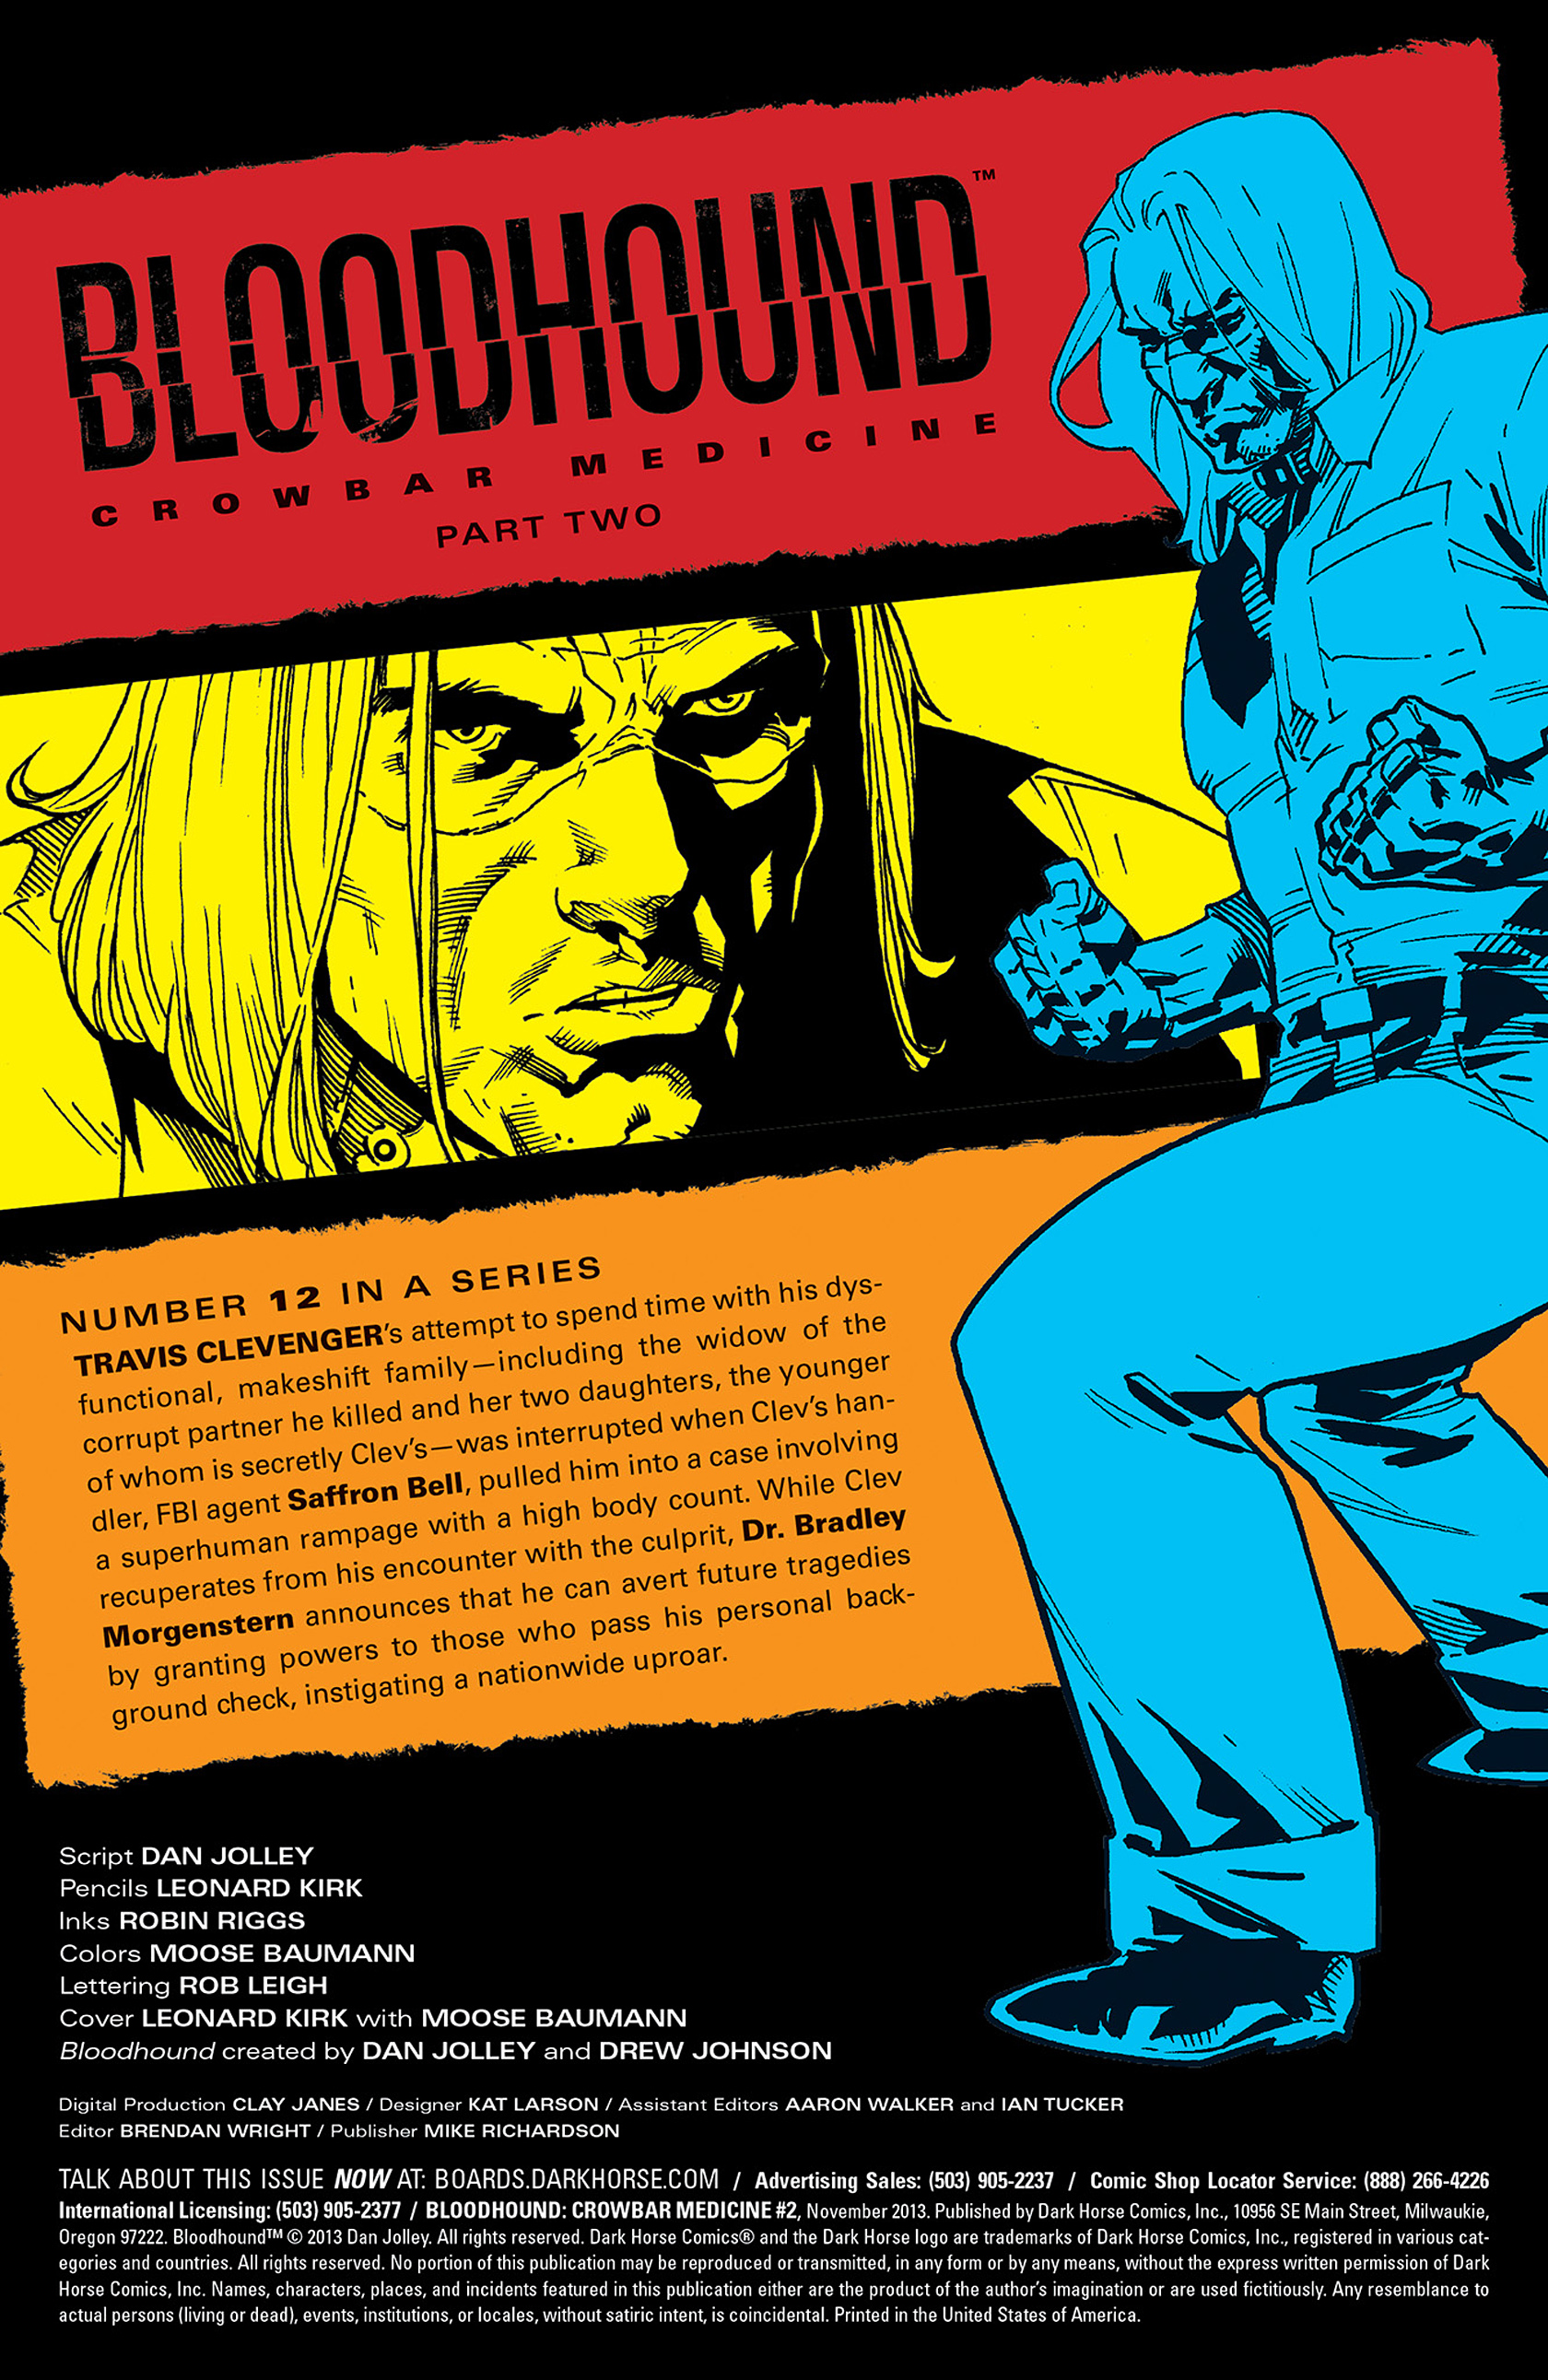 Read online Bloodhound: Crowbar Medicine comic -  Issue #2 - 2